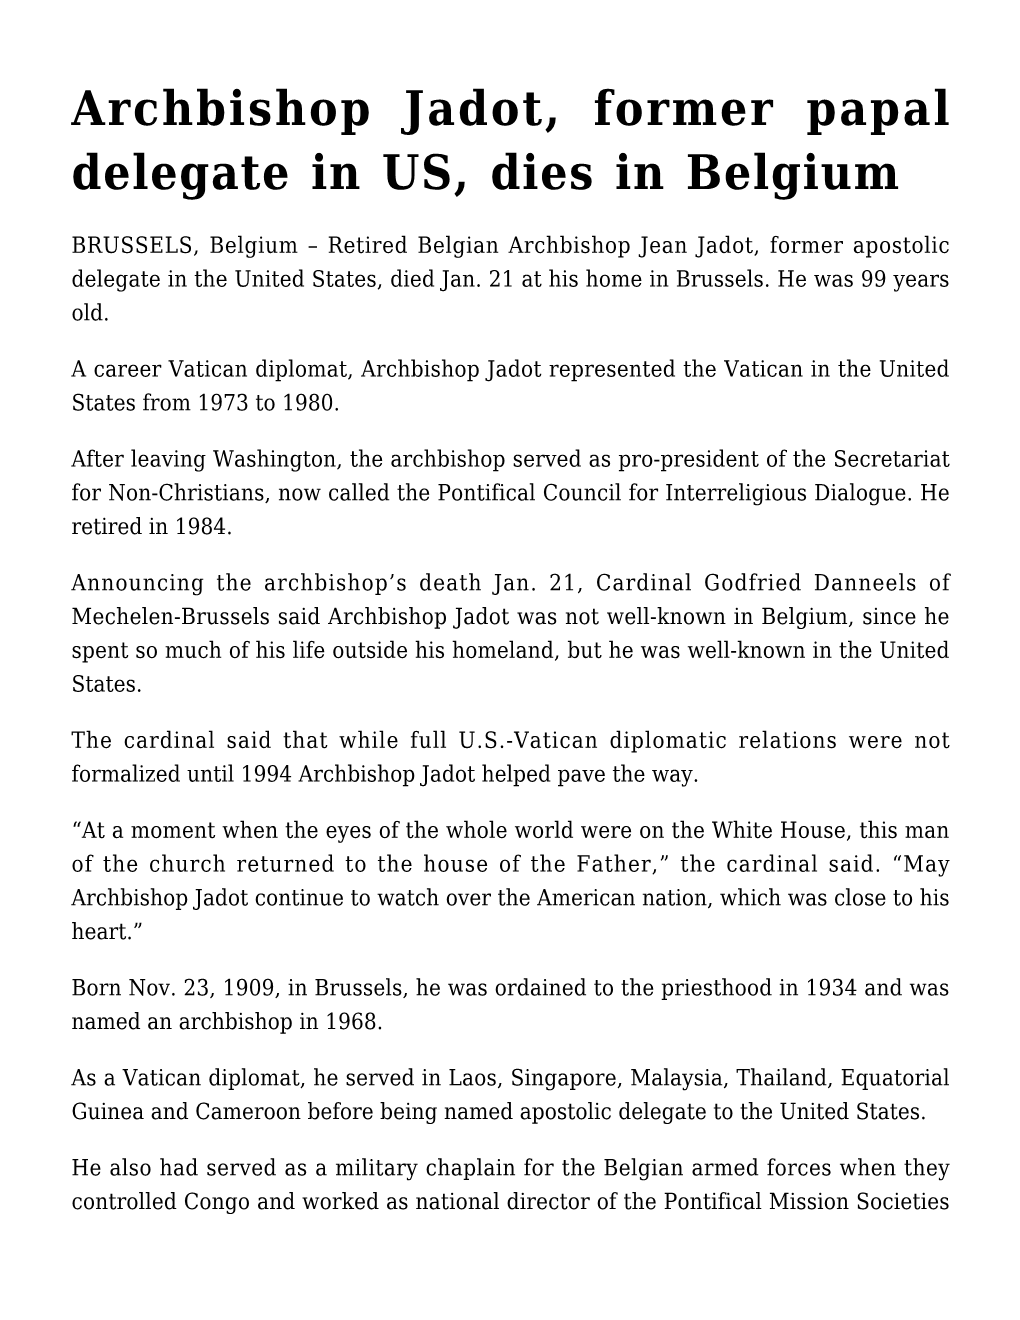 Archbishop Jadot, Former Papal Delegate in US, Dies in Belgium